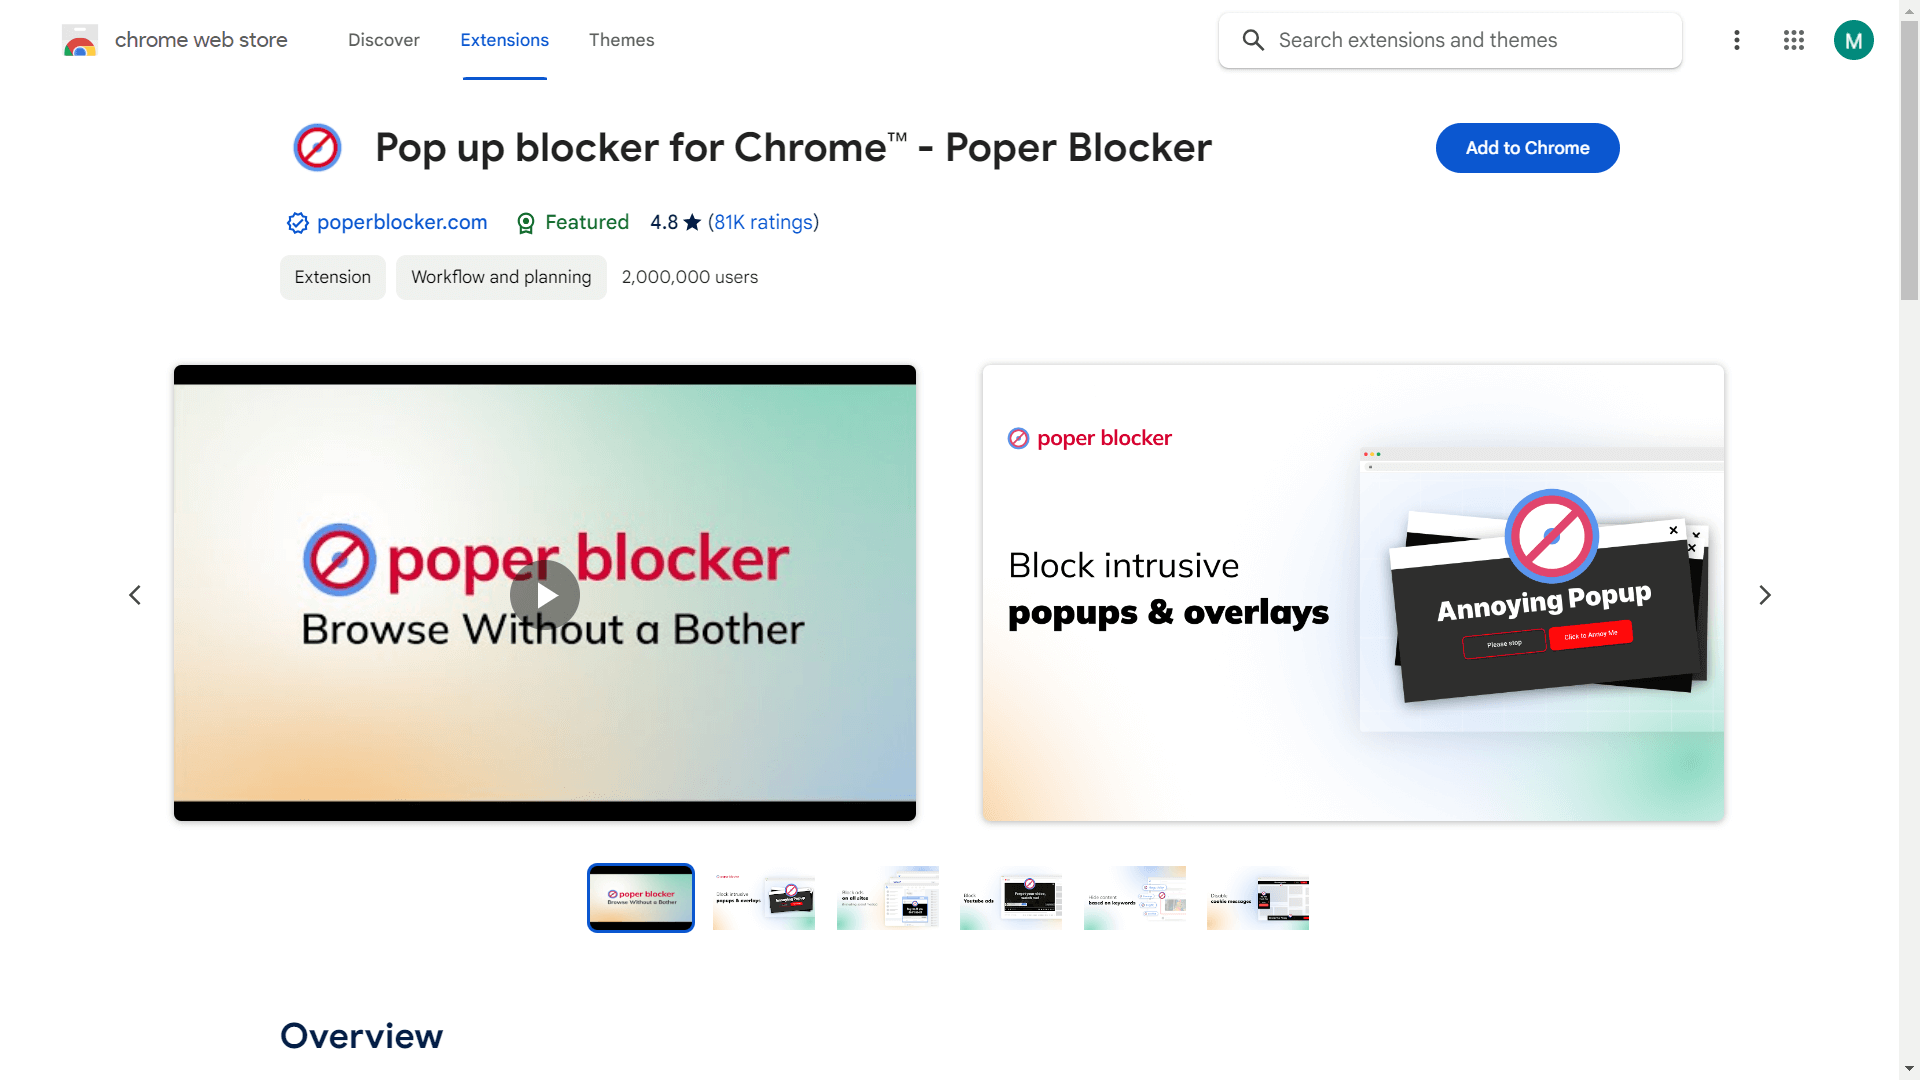 poper blocker extension